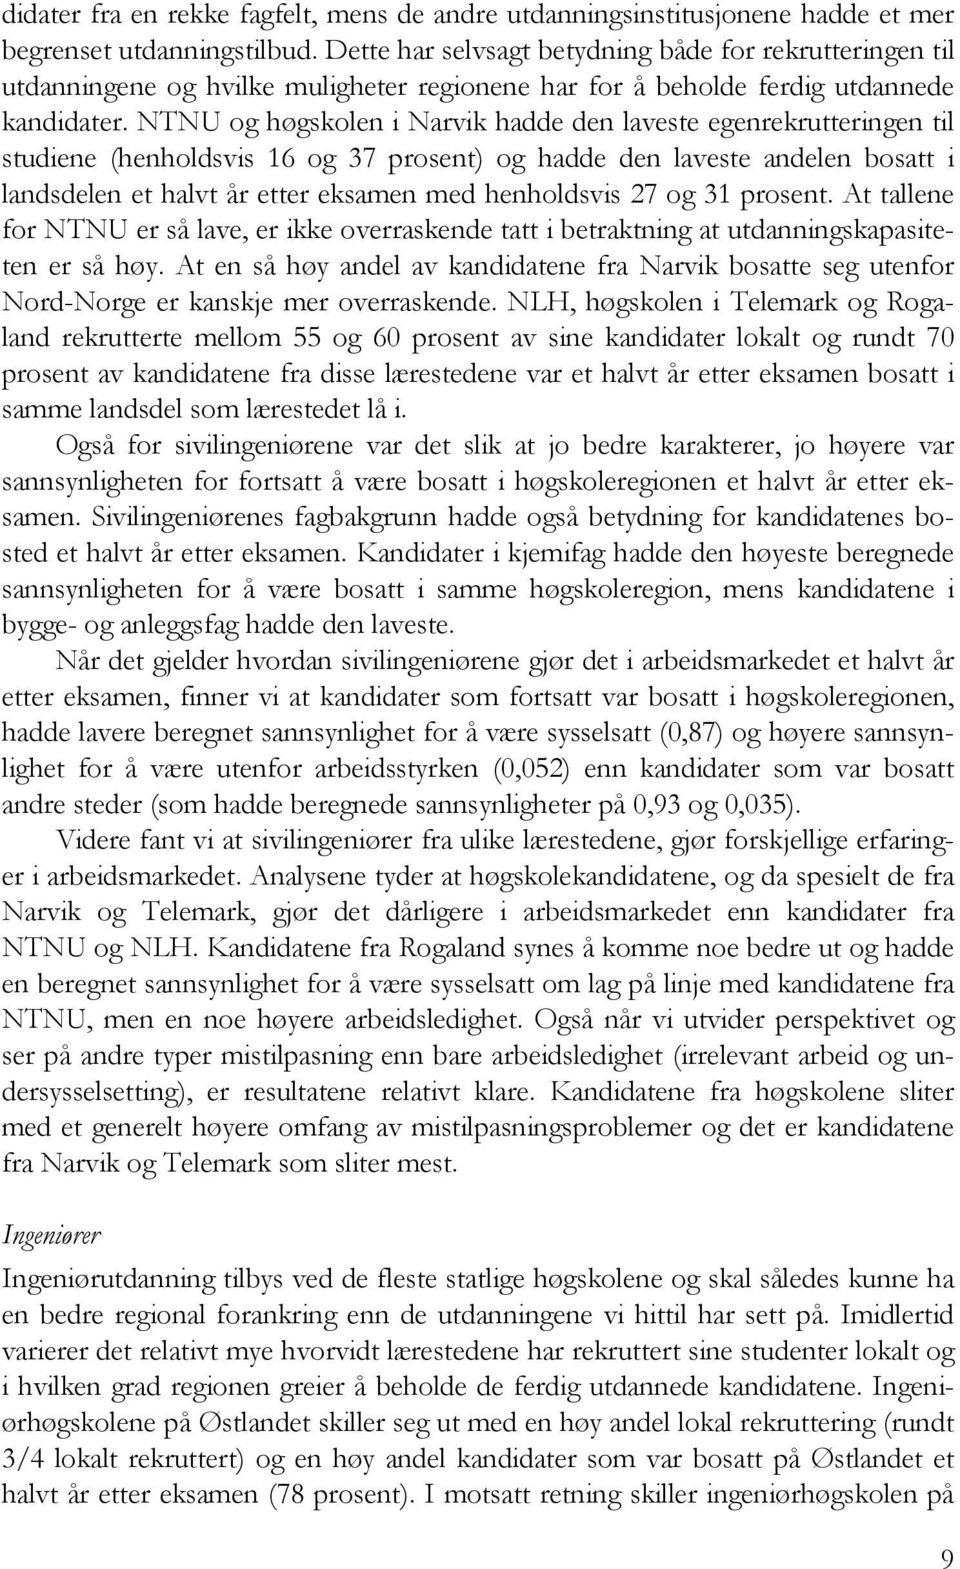 NTNU og høgskolen i Narvik hadde den laveste egenrekrutteringen til studiene (henholdsvis 16 og 37 prosent) og hadde den laveste andelen bosatt i landsdelen et halvt år etter eksamen med henholdsvis